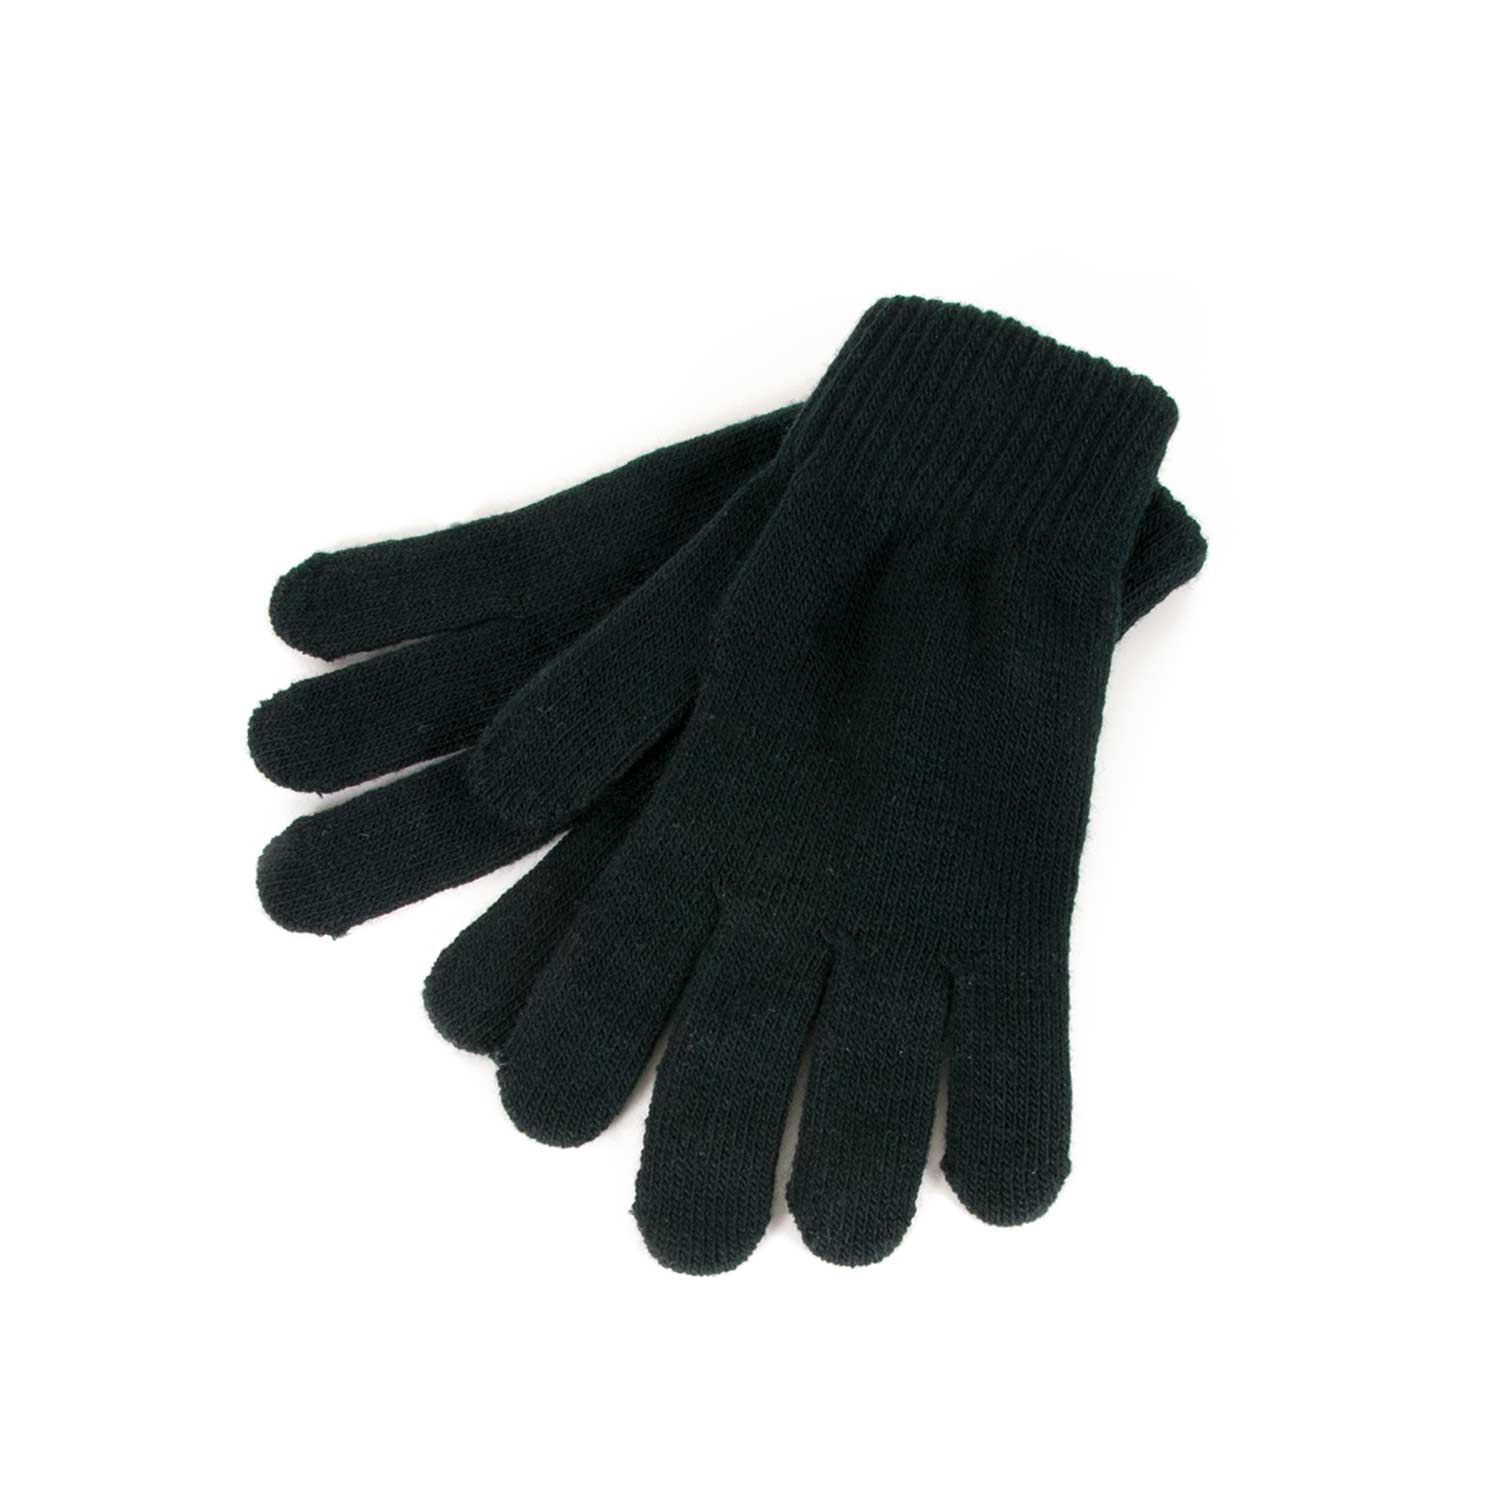 extreme formula gloves